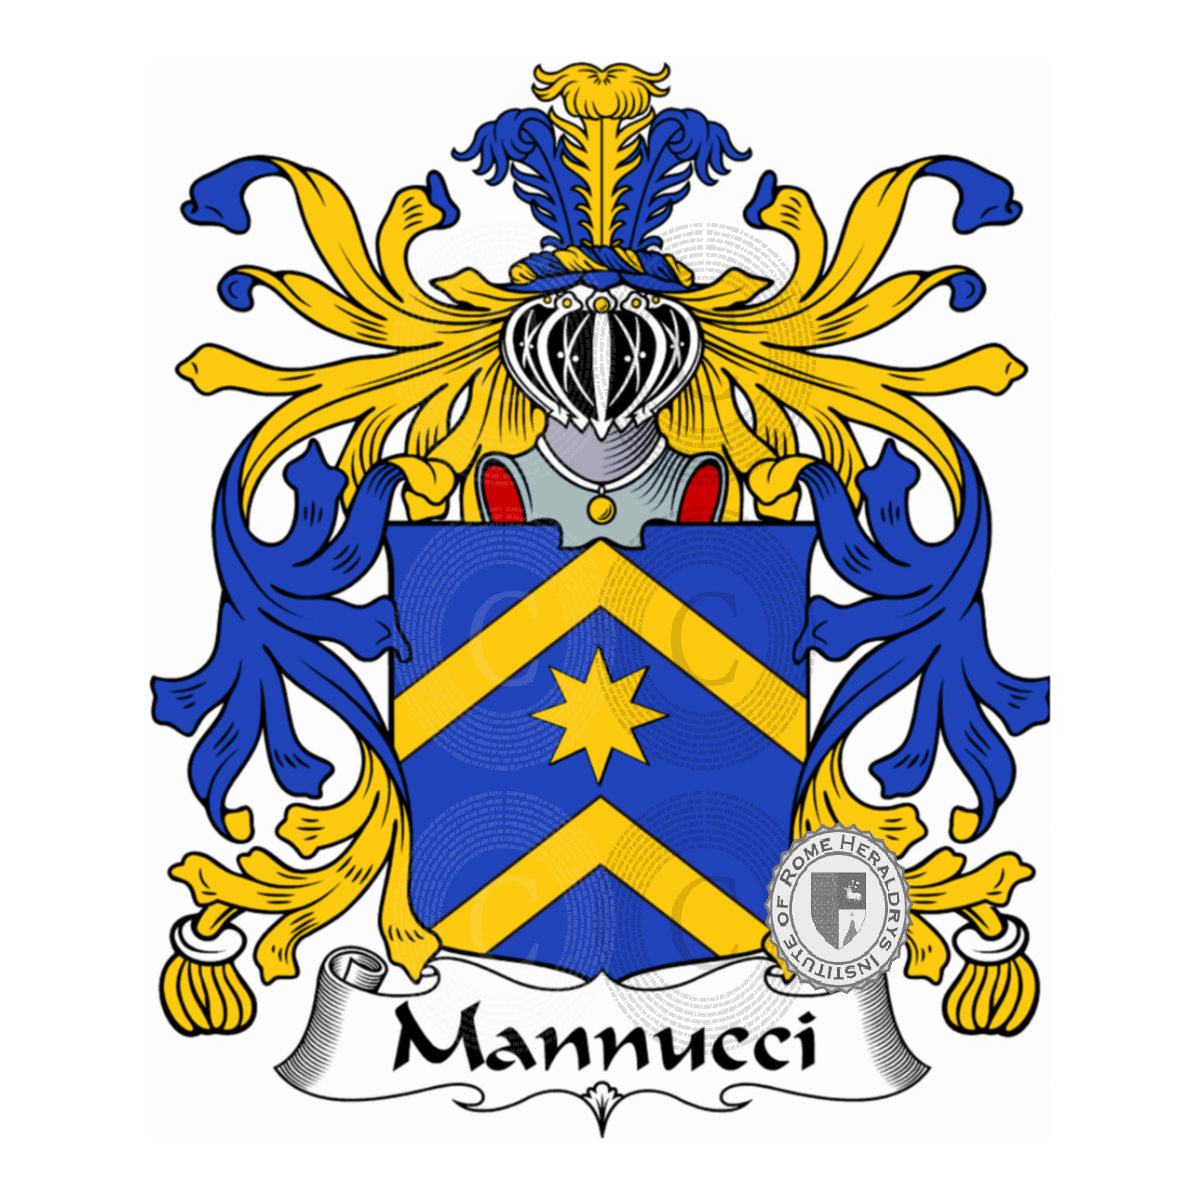 Stemma della famigliaMannucci, Mannucci Benincasa,Mannucci de' Cori,Mannucci del Lion Rosso,Mannucci delle Stelle